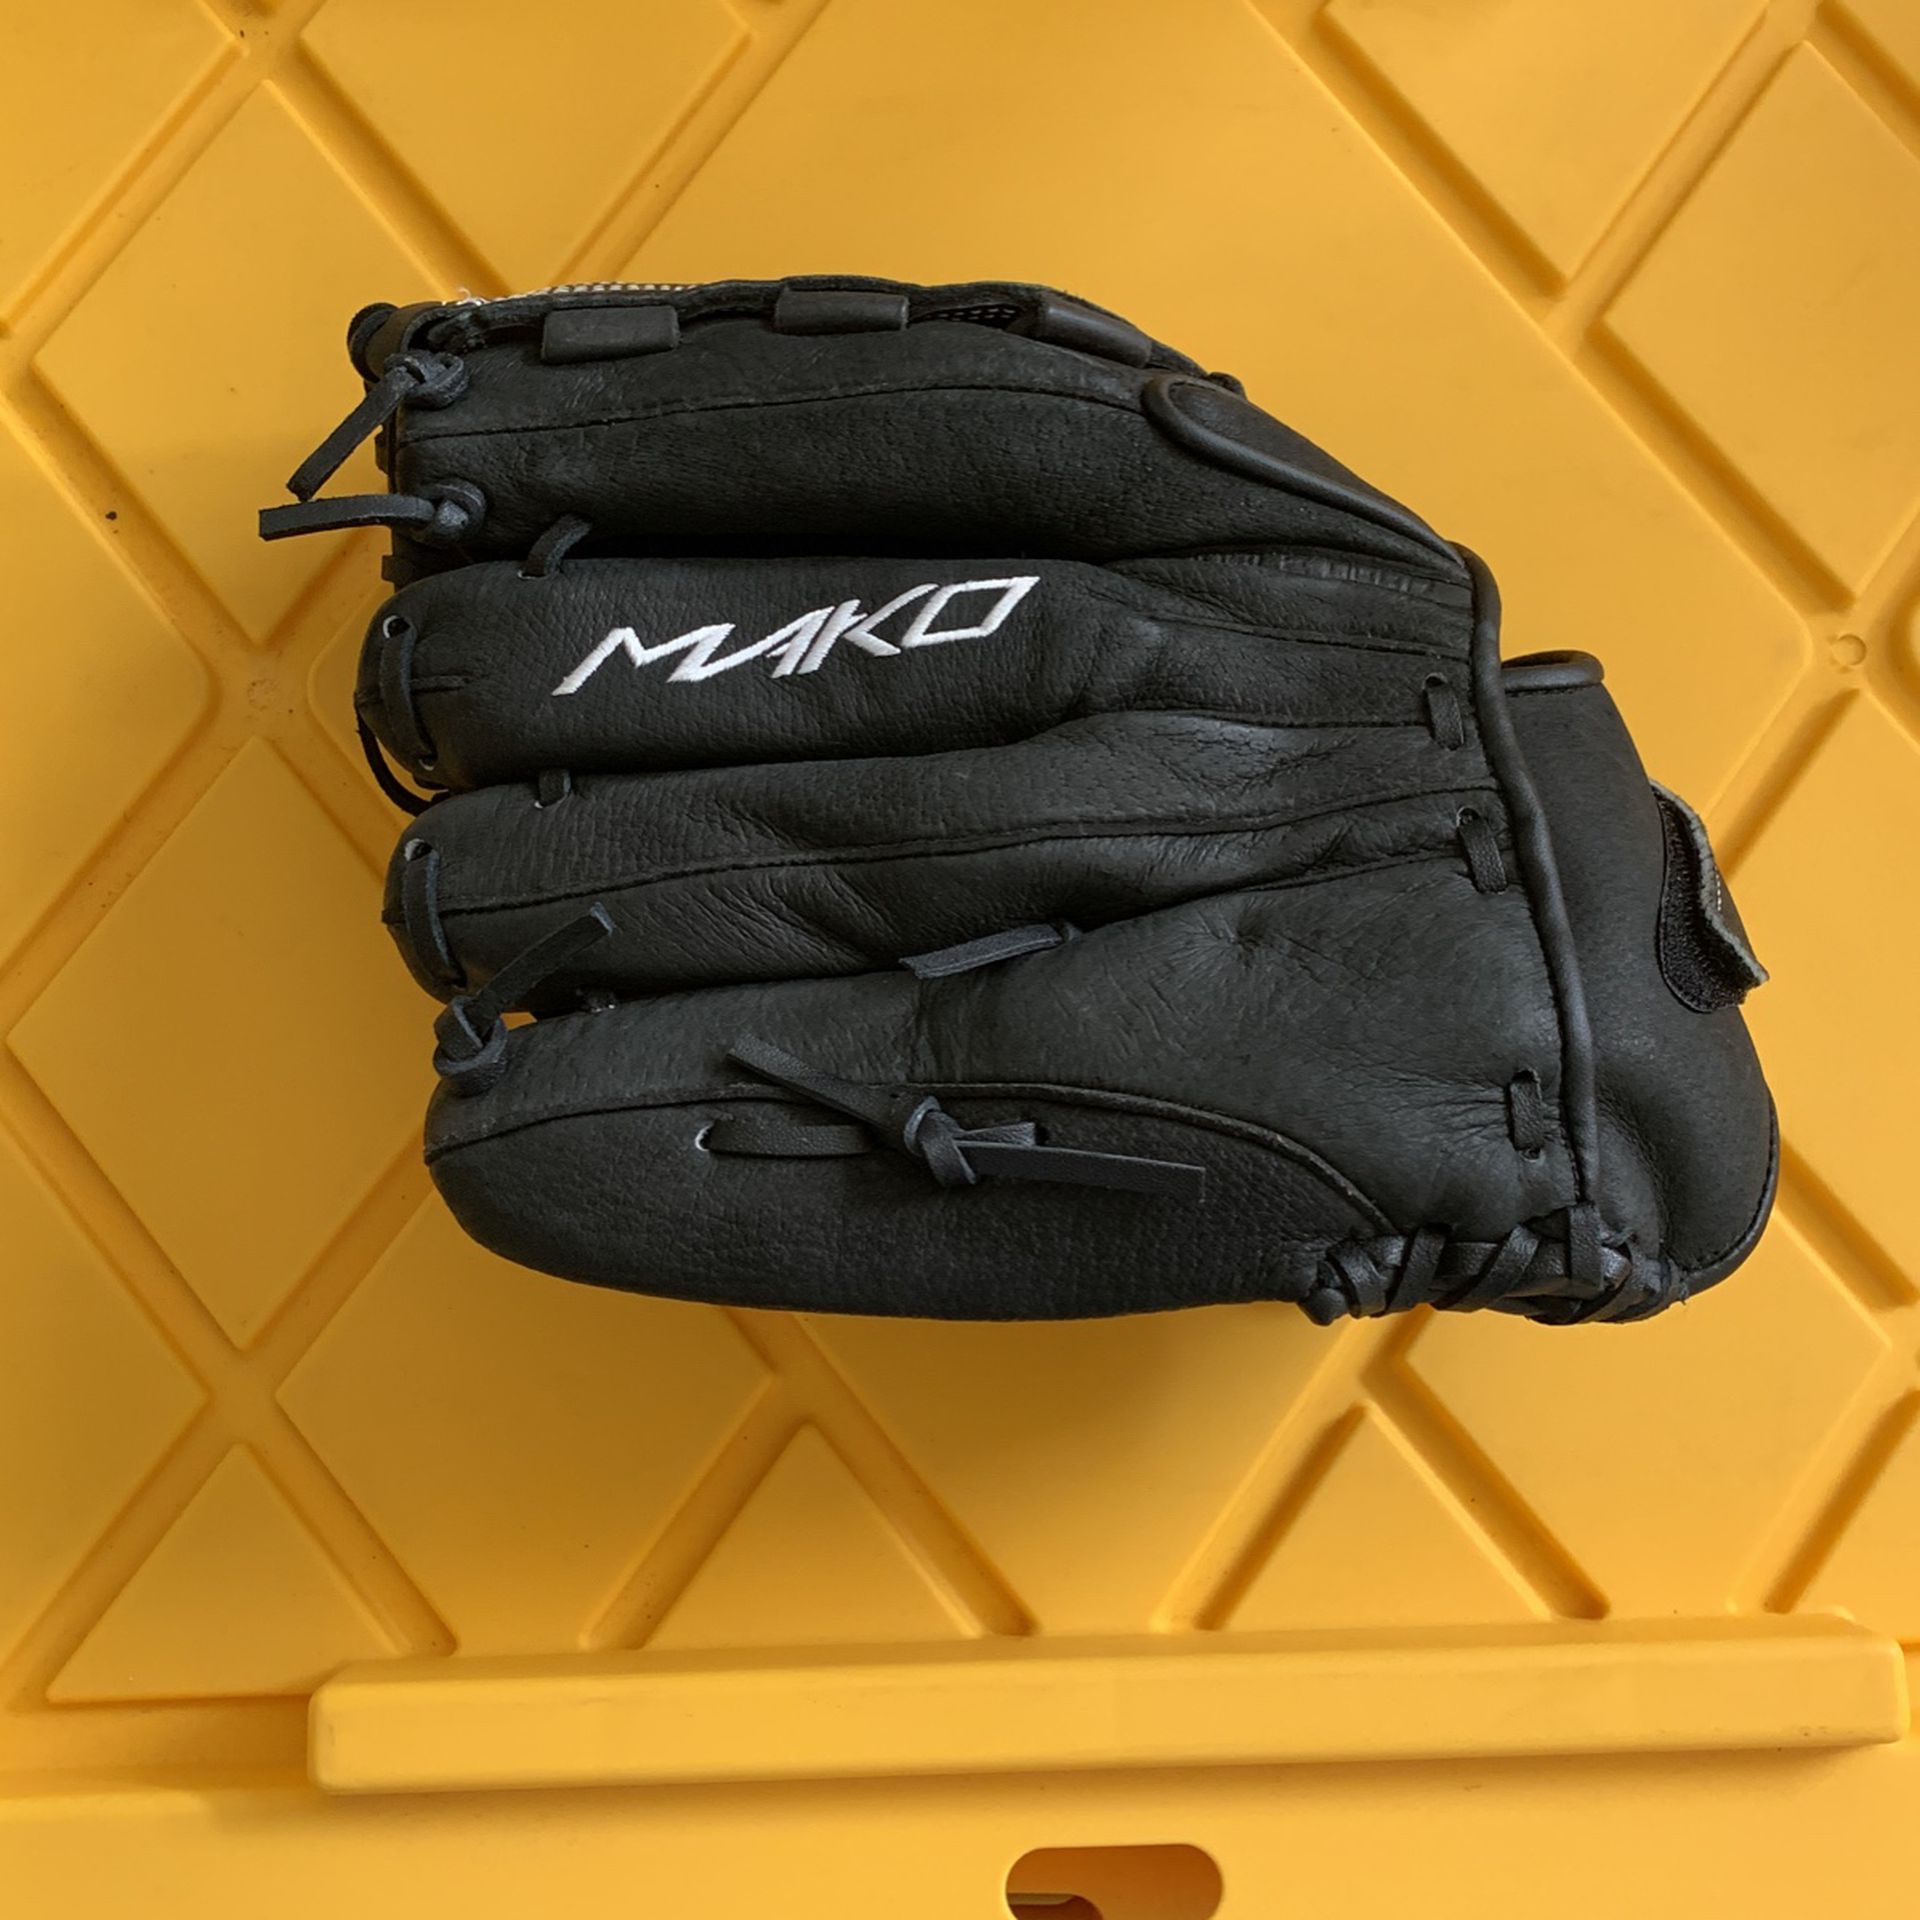 Easton Mako Baseball Glove Size12.5